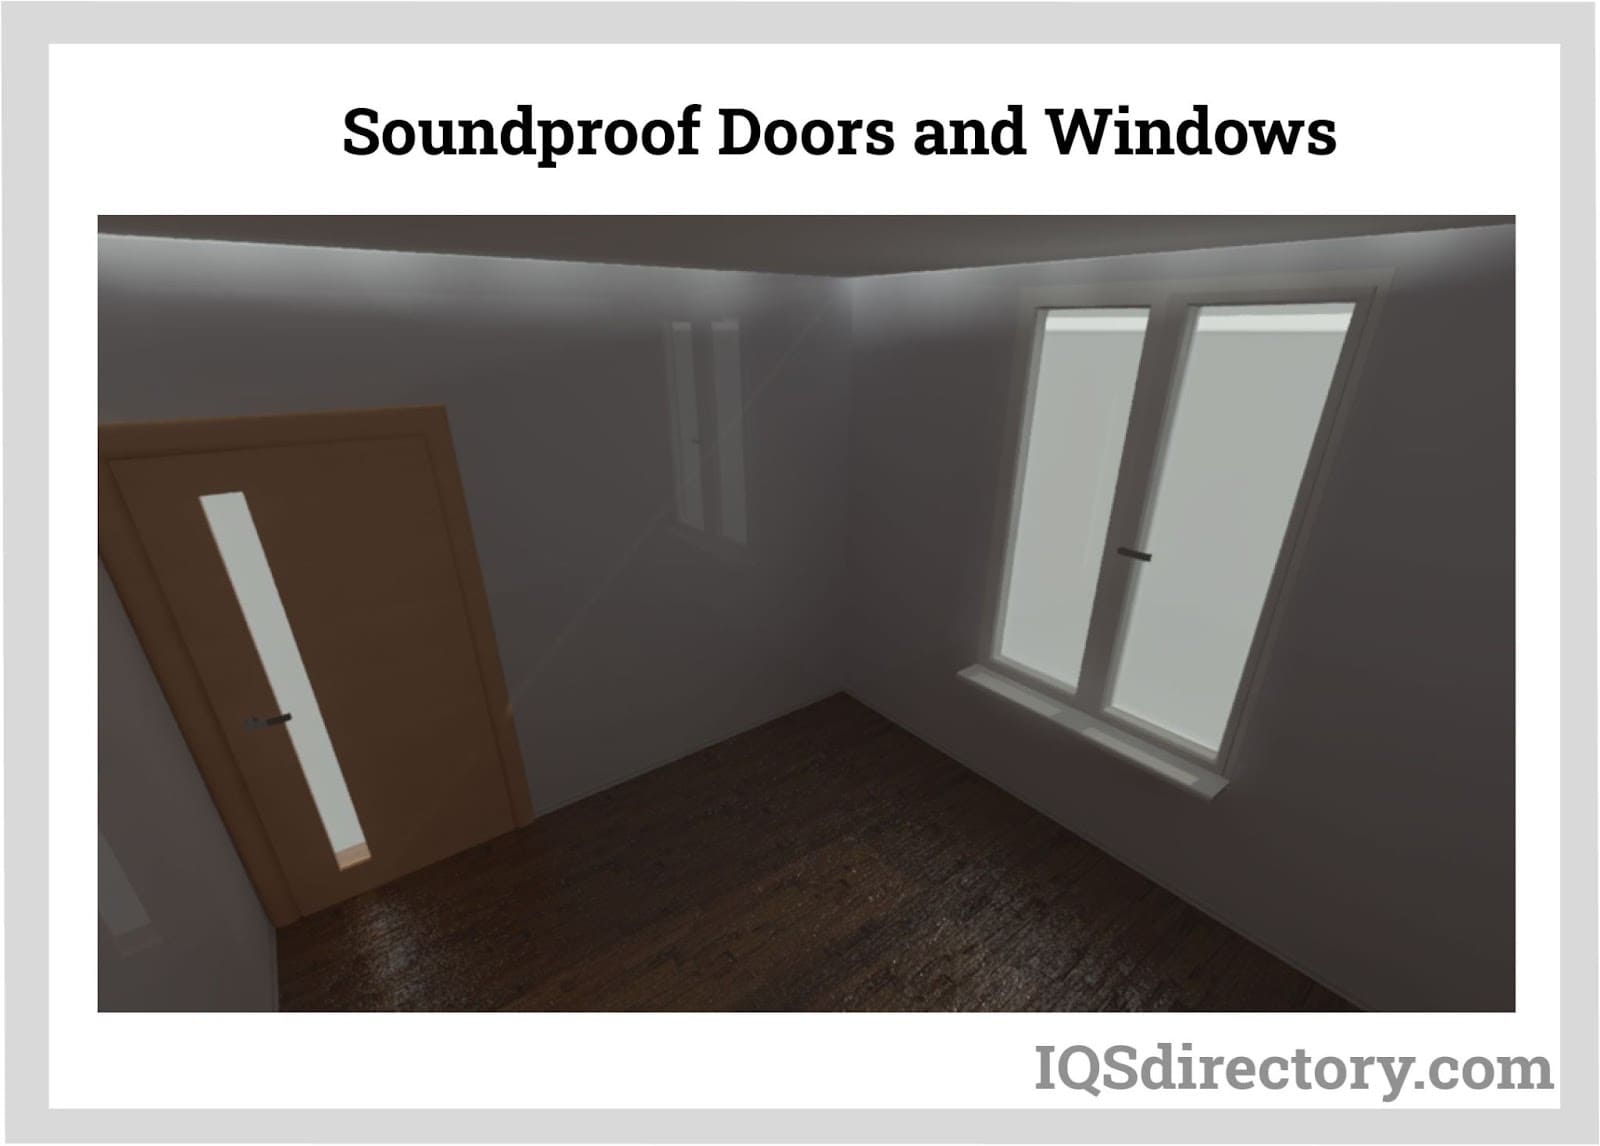 Soundproof Doors and Windows